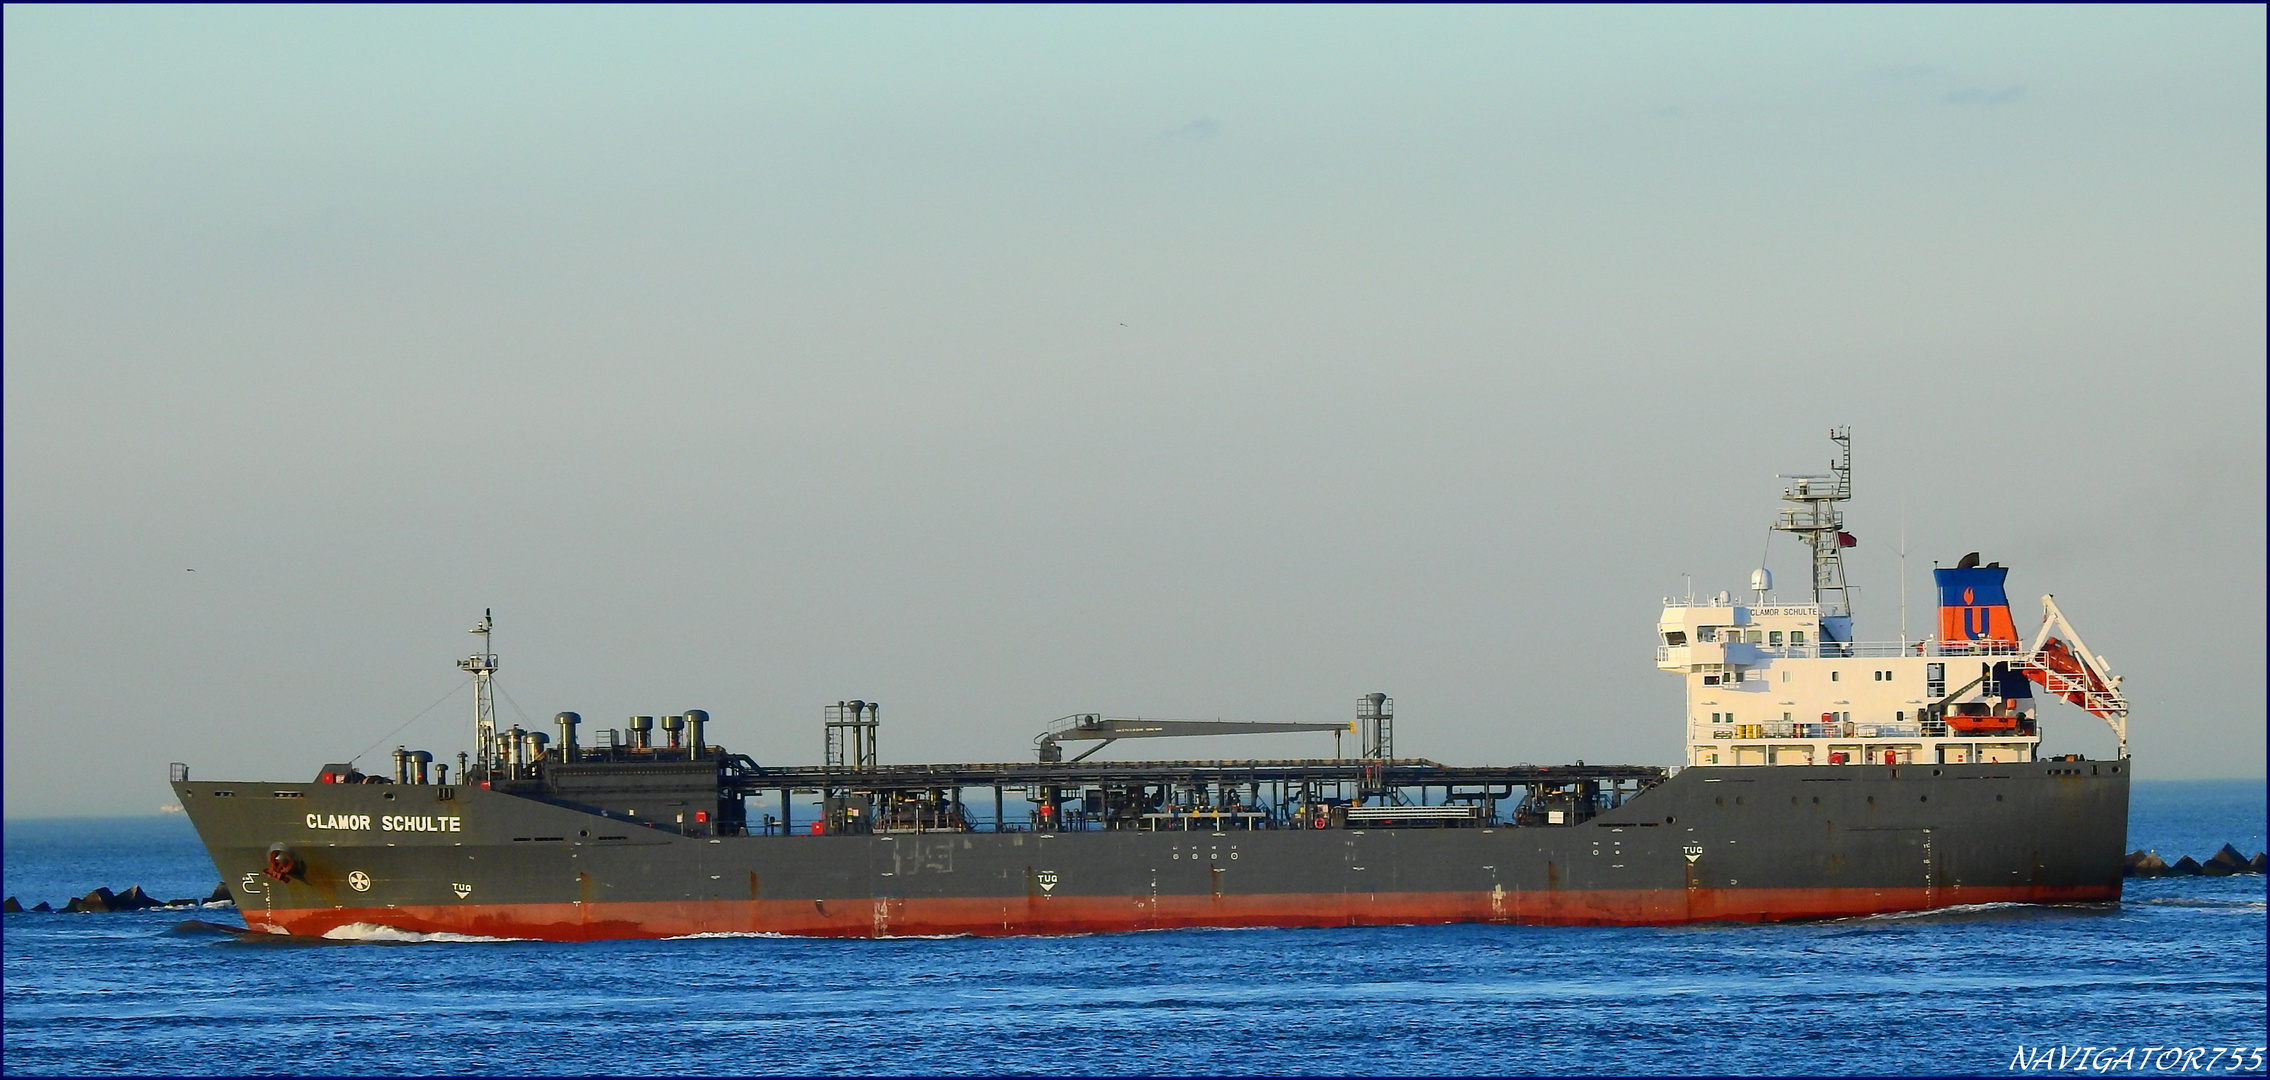 "GLAMOR SCHULTE" Tanker, Rotterdam.